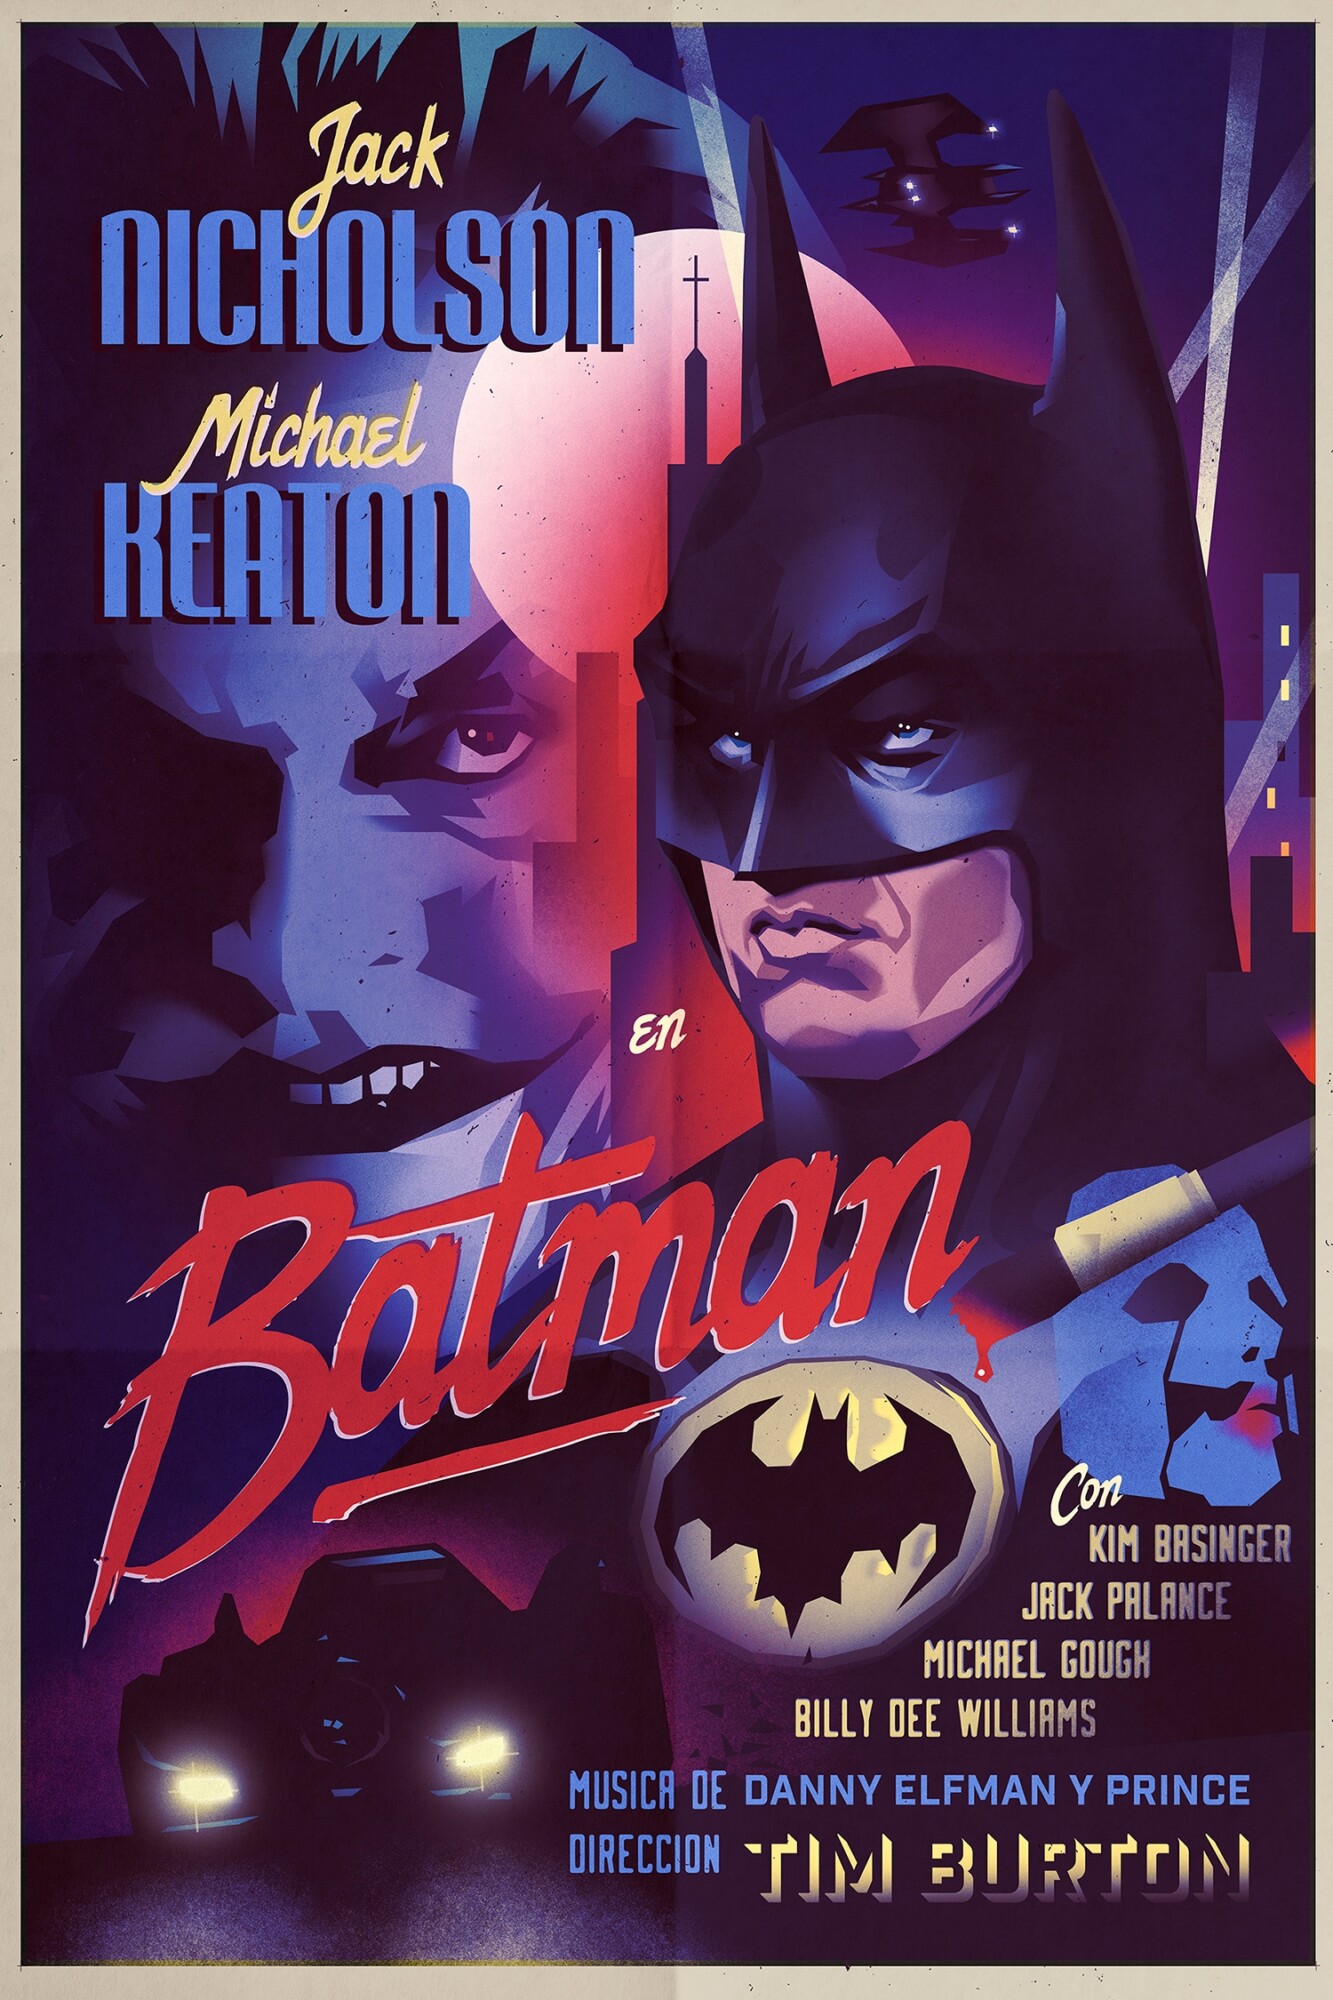 Batman (1989) - PosterSpy